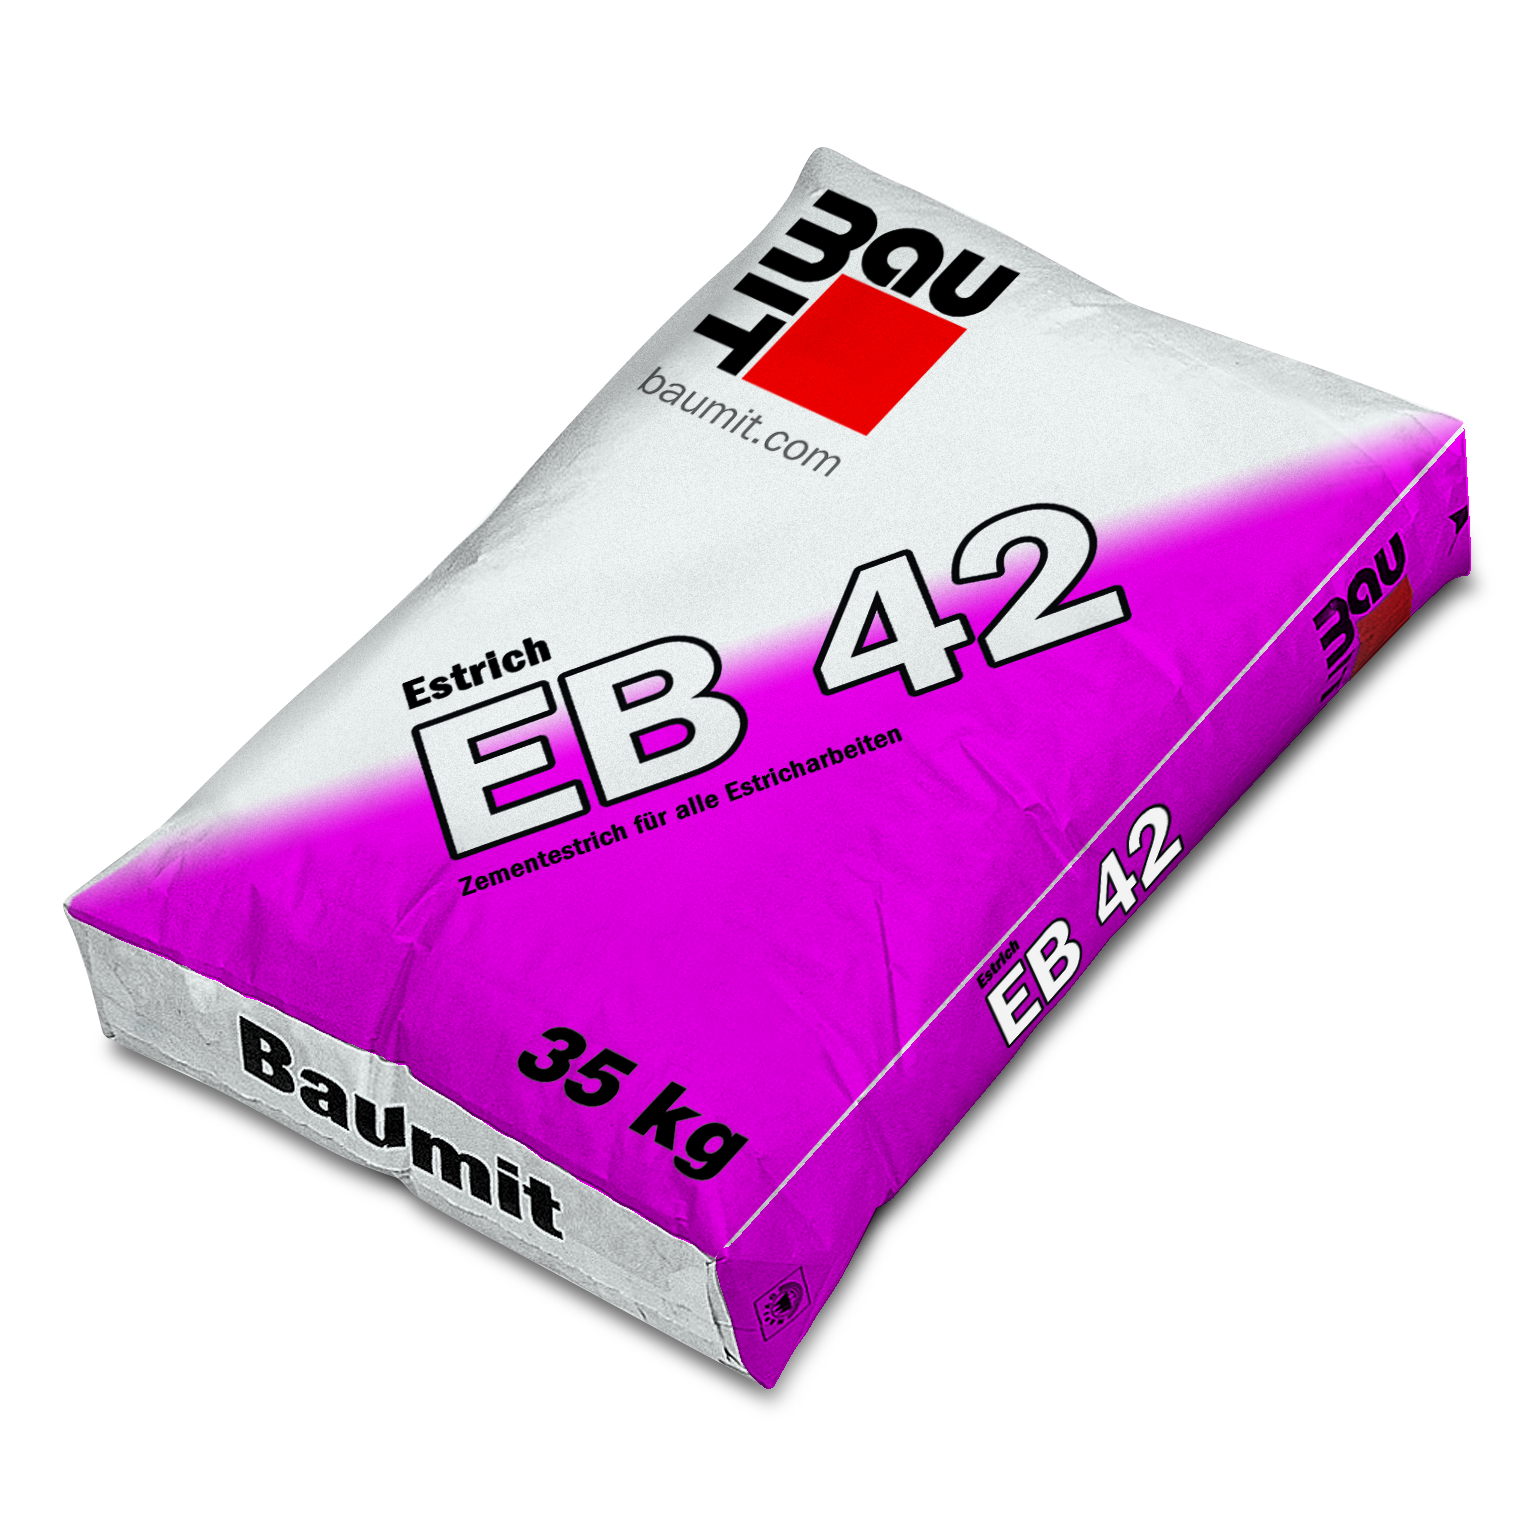 Baumit Estrich EB 42, 35kg